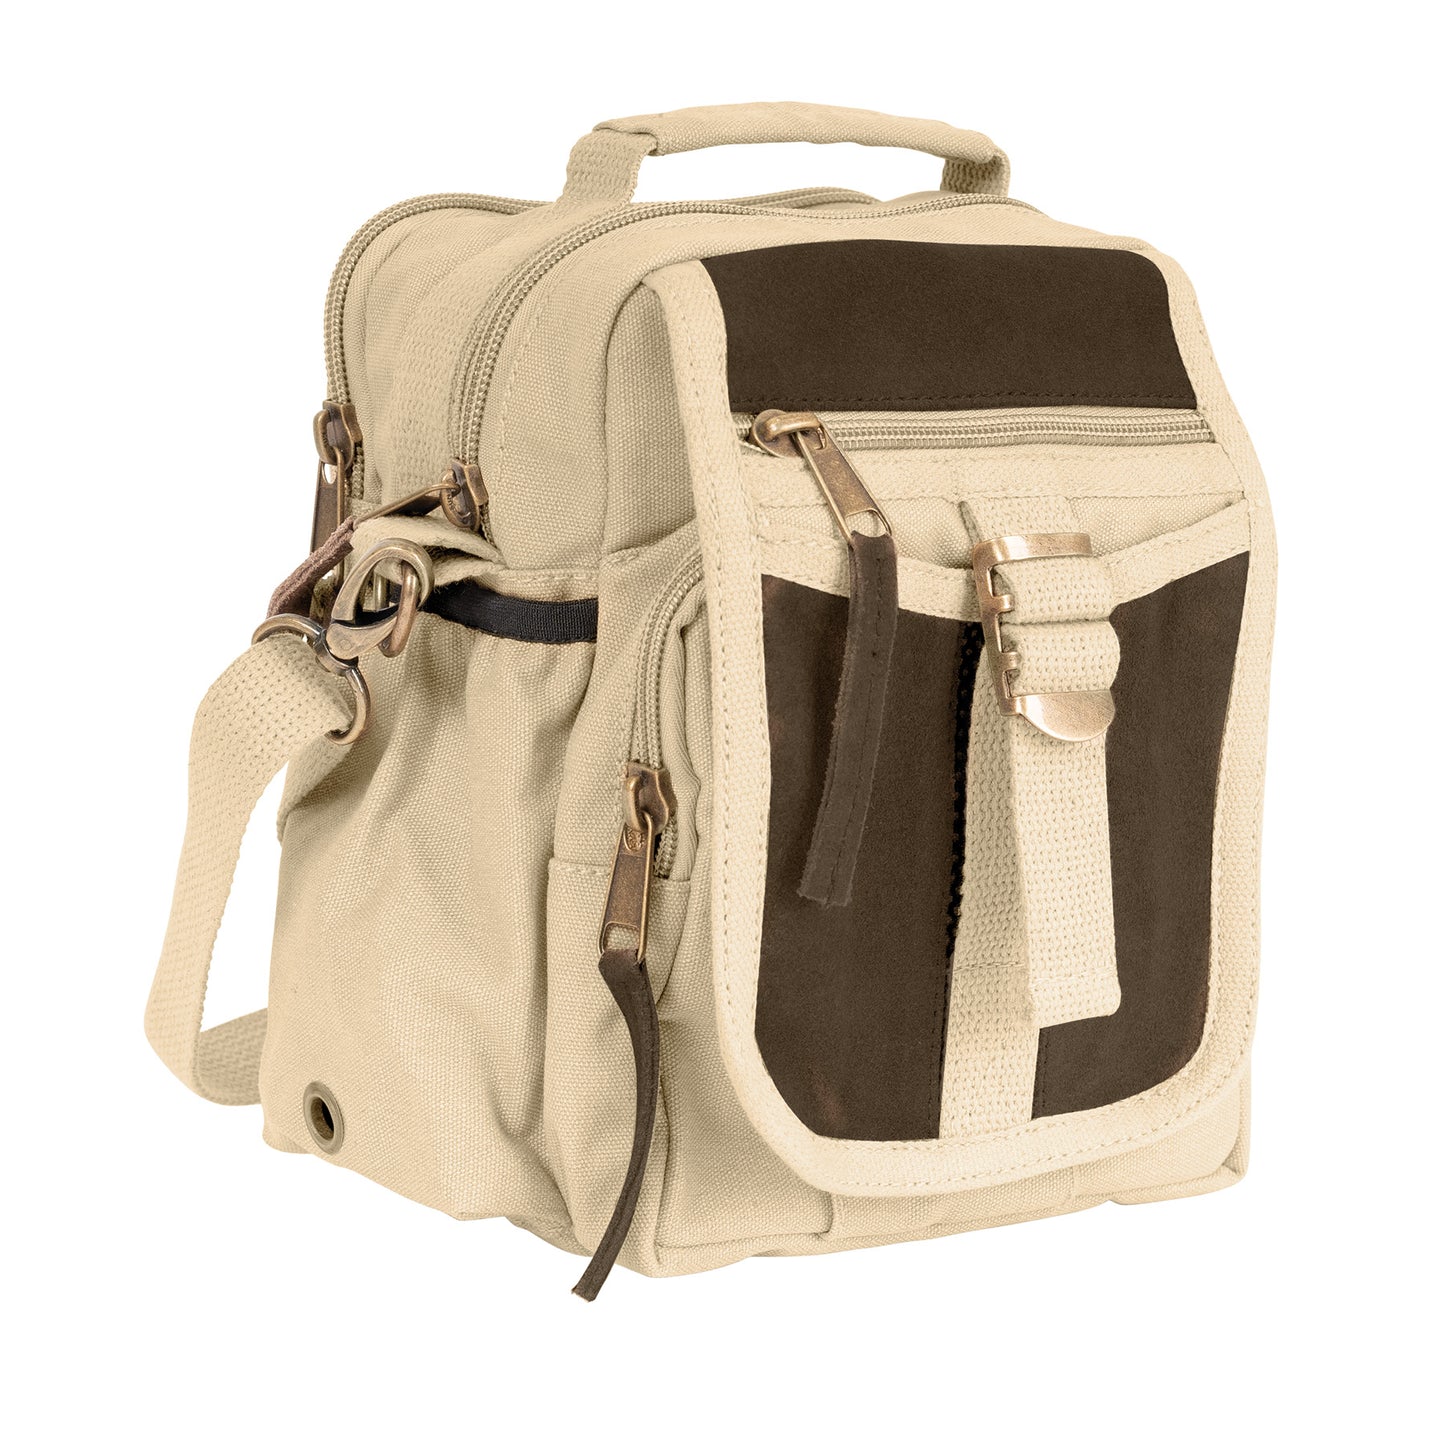 Rothco Vintage Canvas & Leather Travel Shoulder Bag